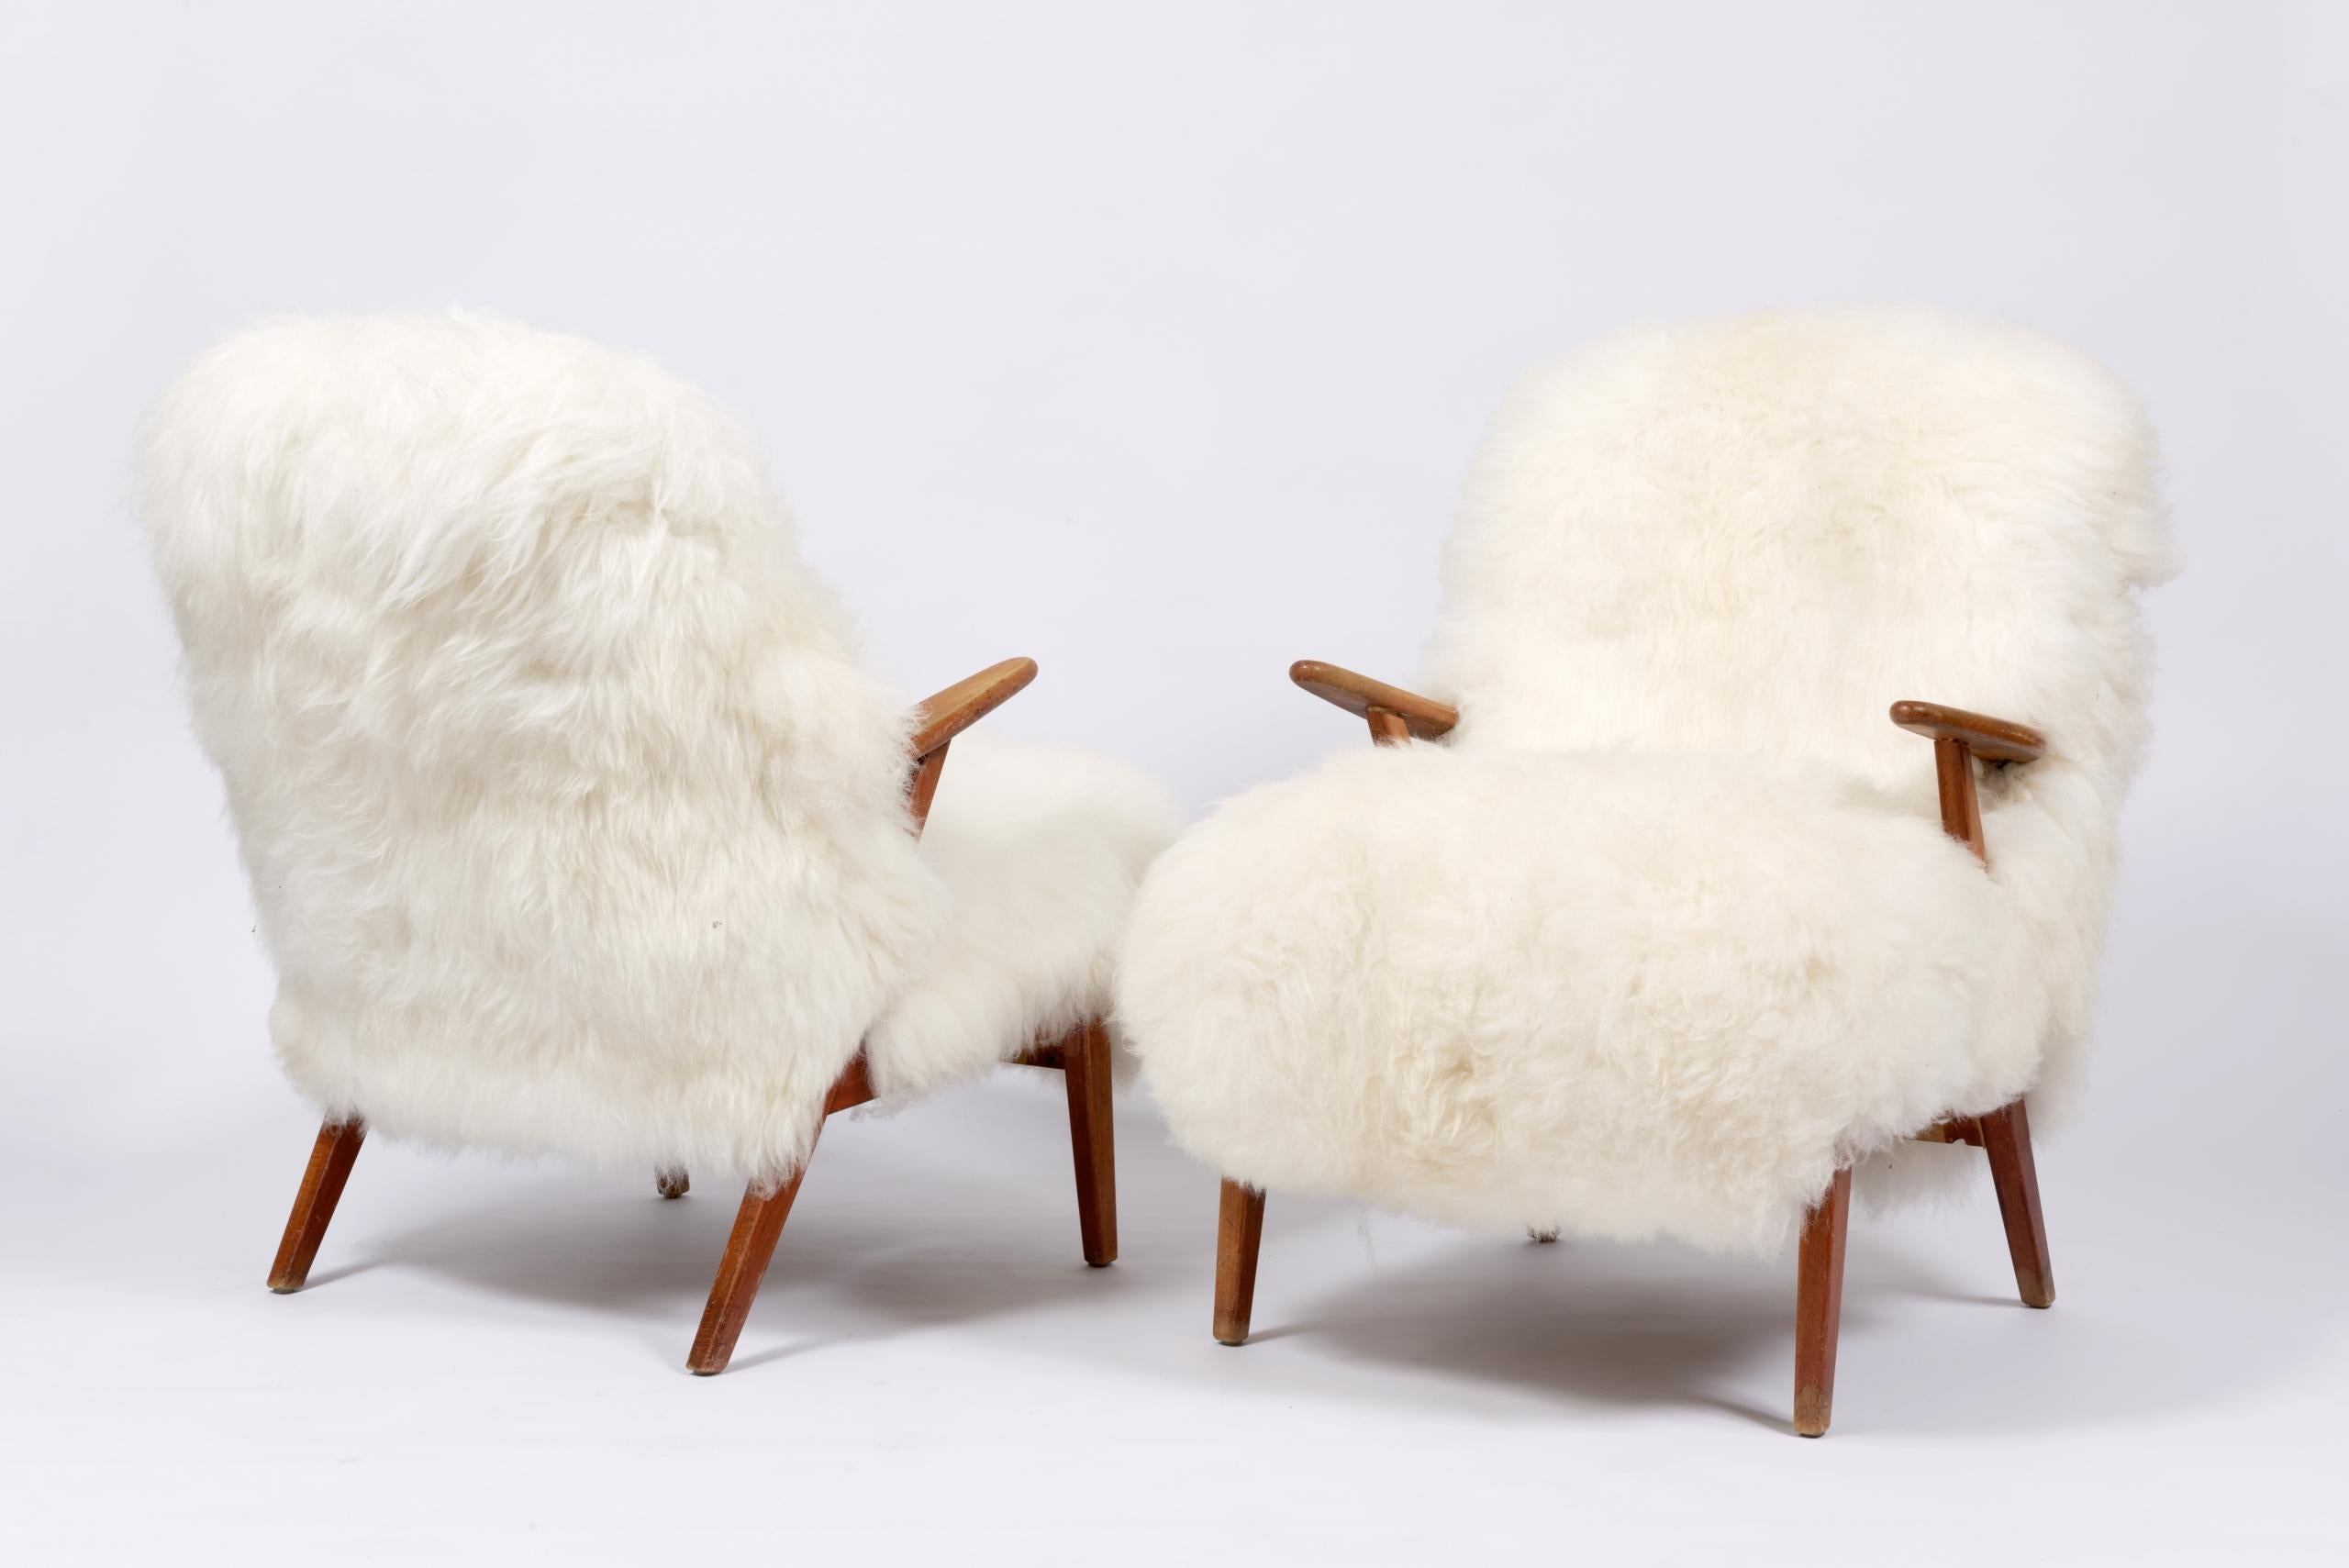 Modèle suédois chaleureux et confortable, de style moderne du milieu du siècle, rembourré en peau de mouton.

Dimensions : H 83 x L 60 x P 53 cm et hauteur d’assise 43 cm.